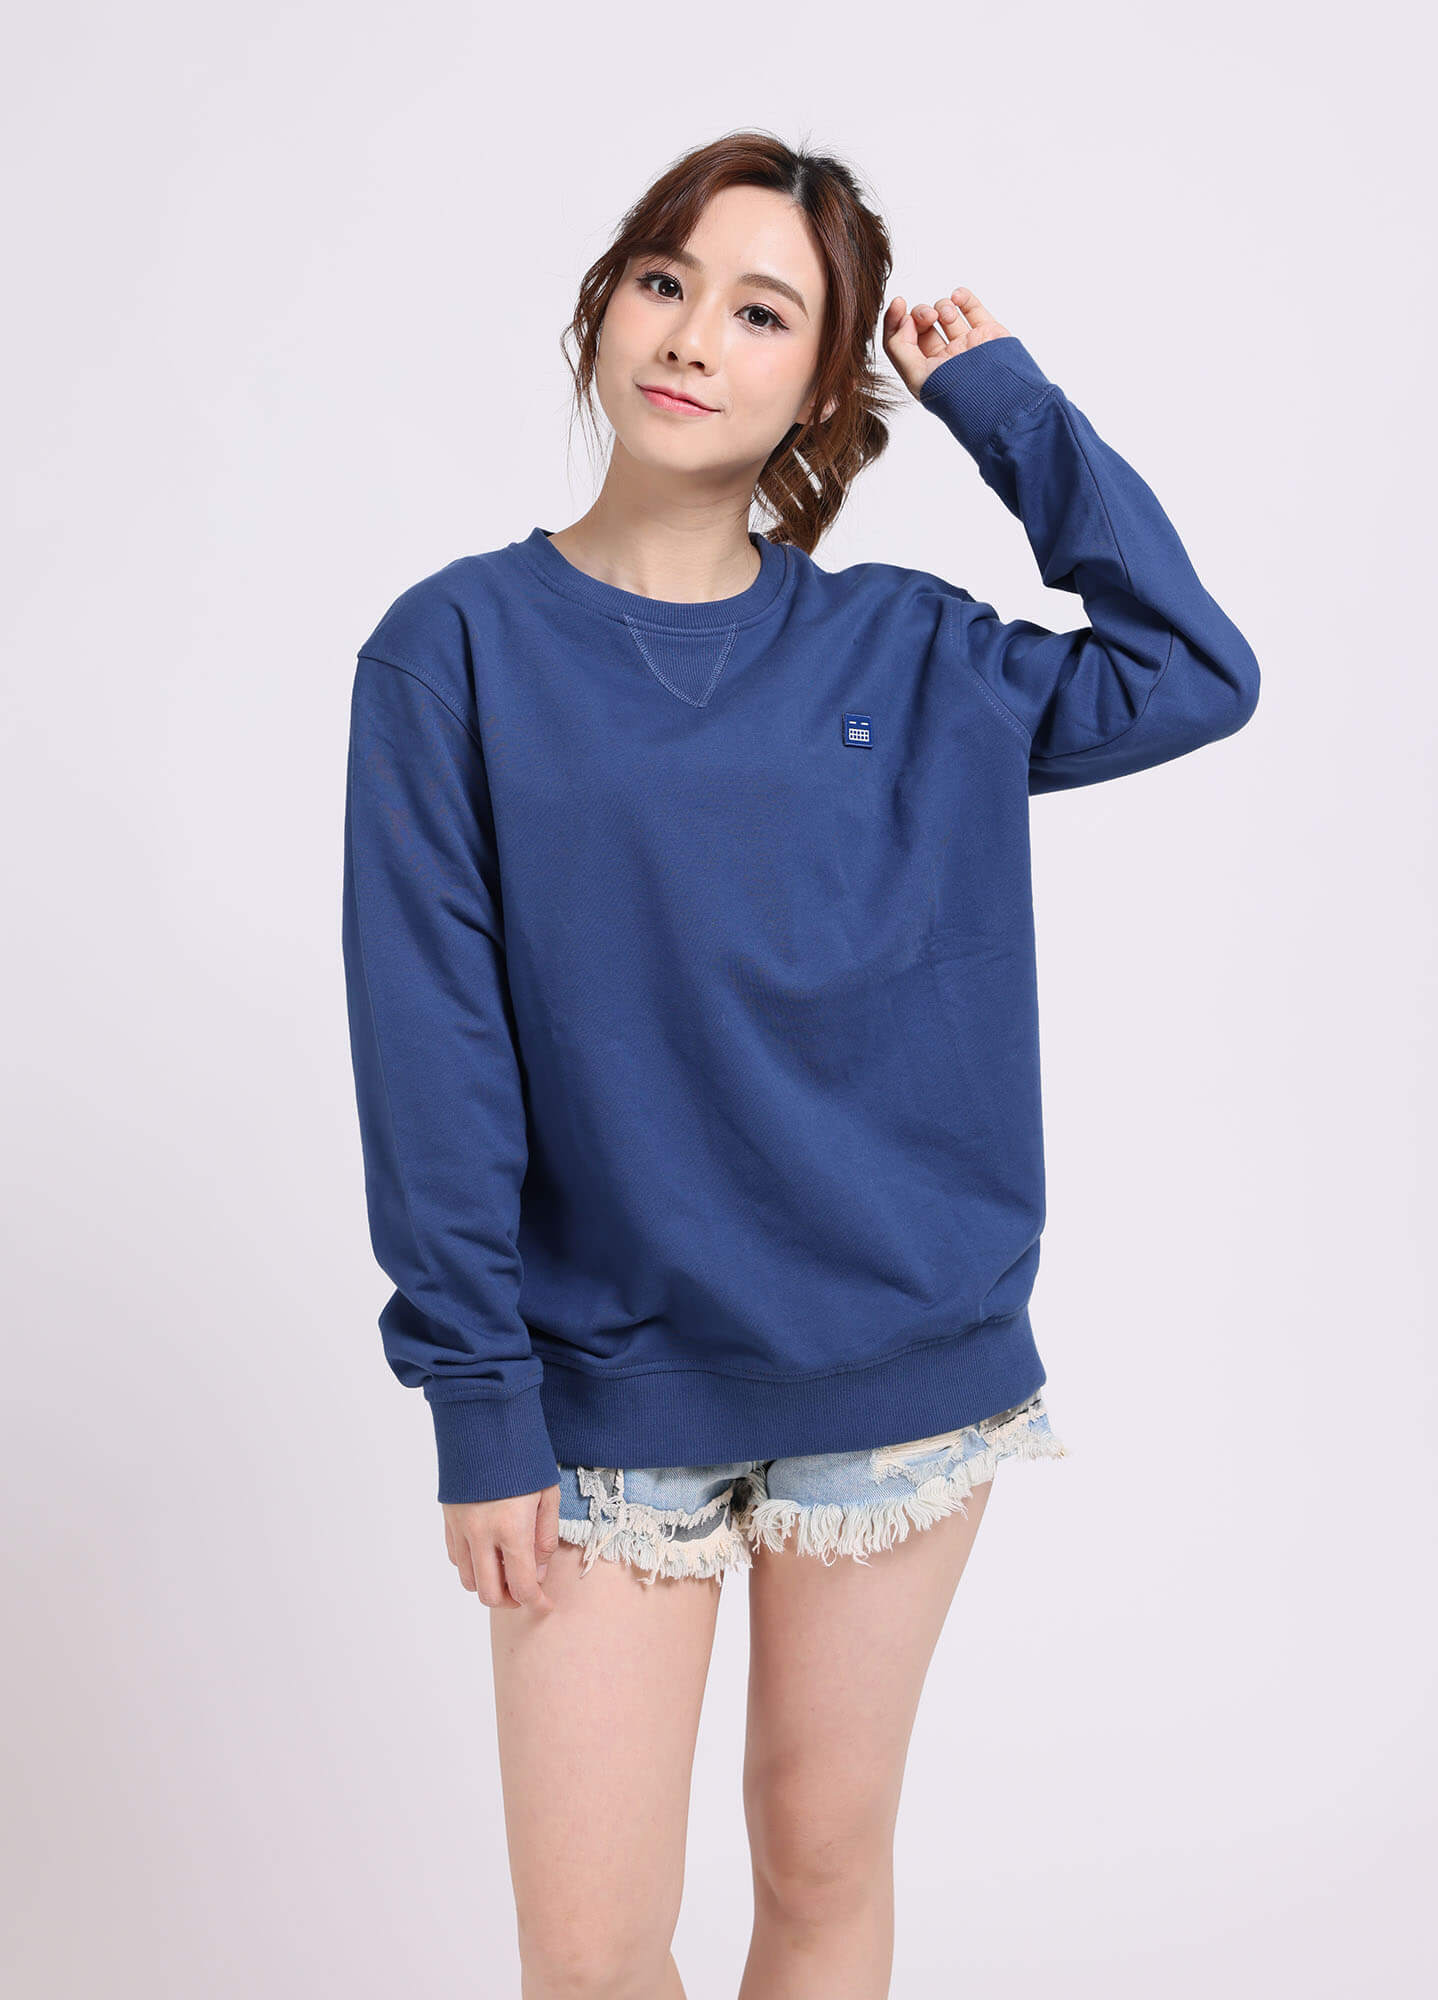 訂制衣服, 訂制衣服香港, Zenus Uniform -model in blue hoodie